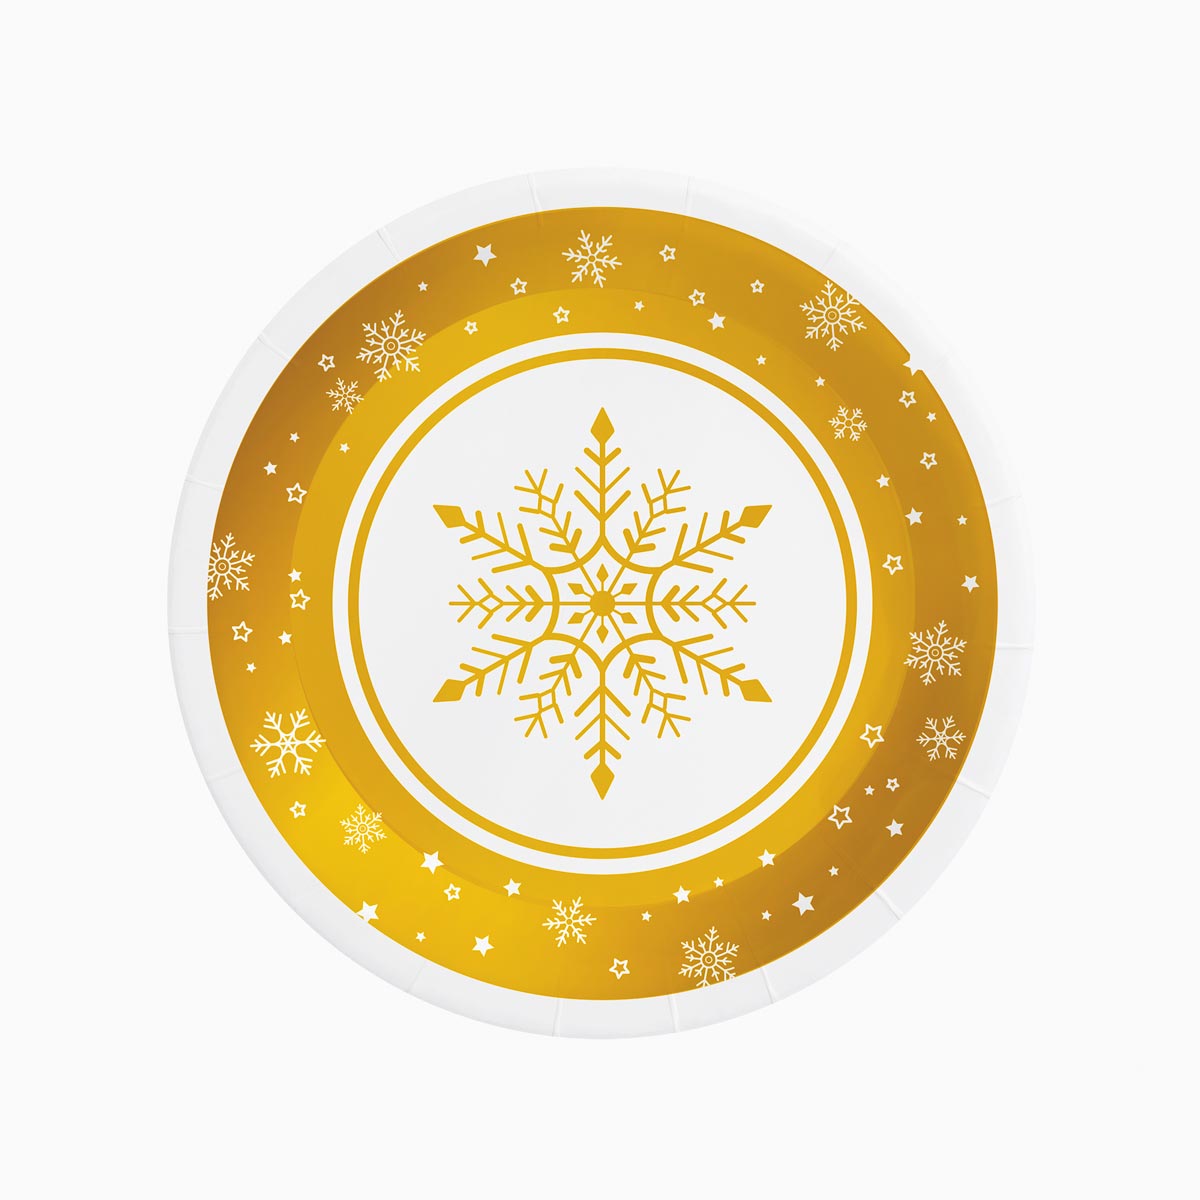 Weihnachtspartplatte Ø 23 cm Copo Snow Gold